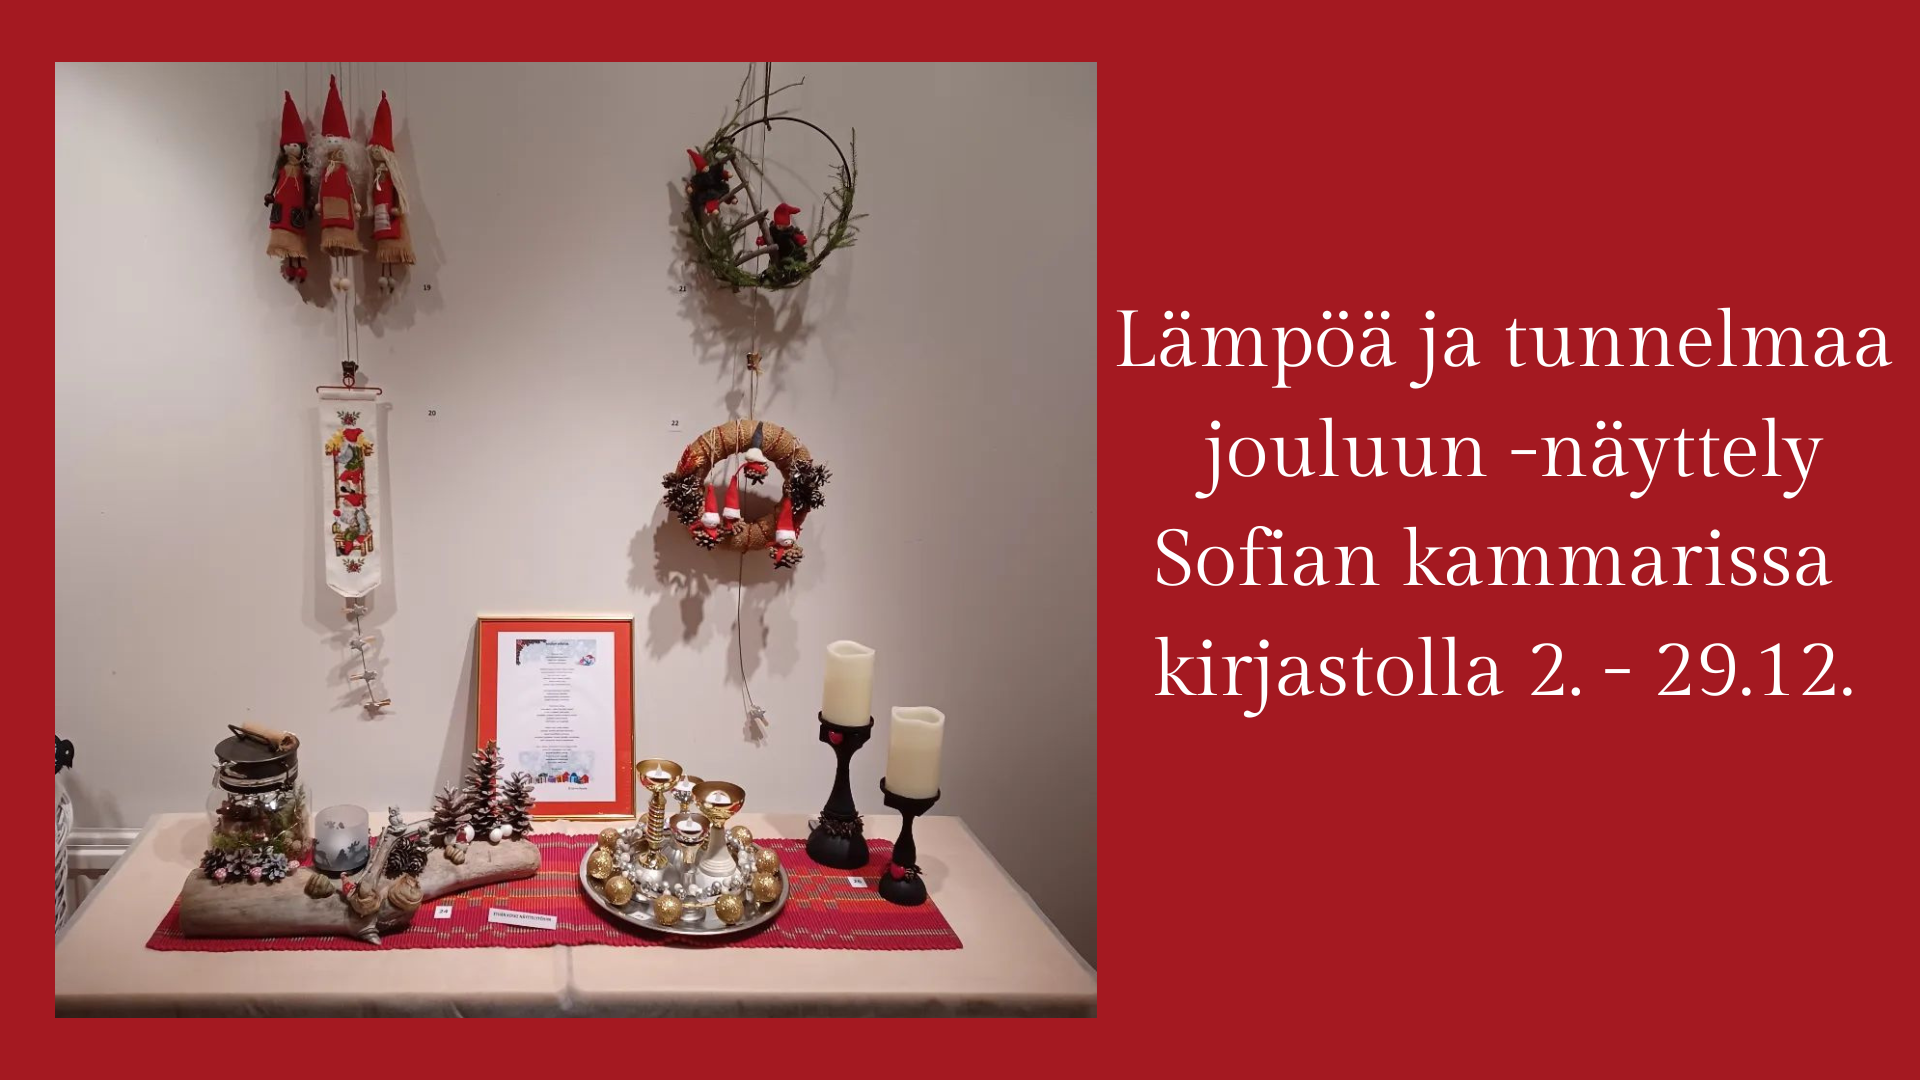 Sofian kammarin joulukuun näyttely